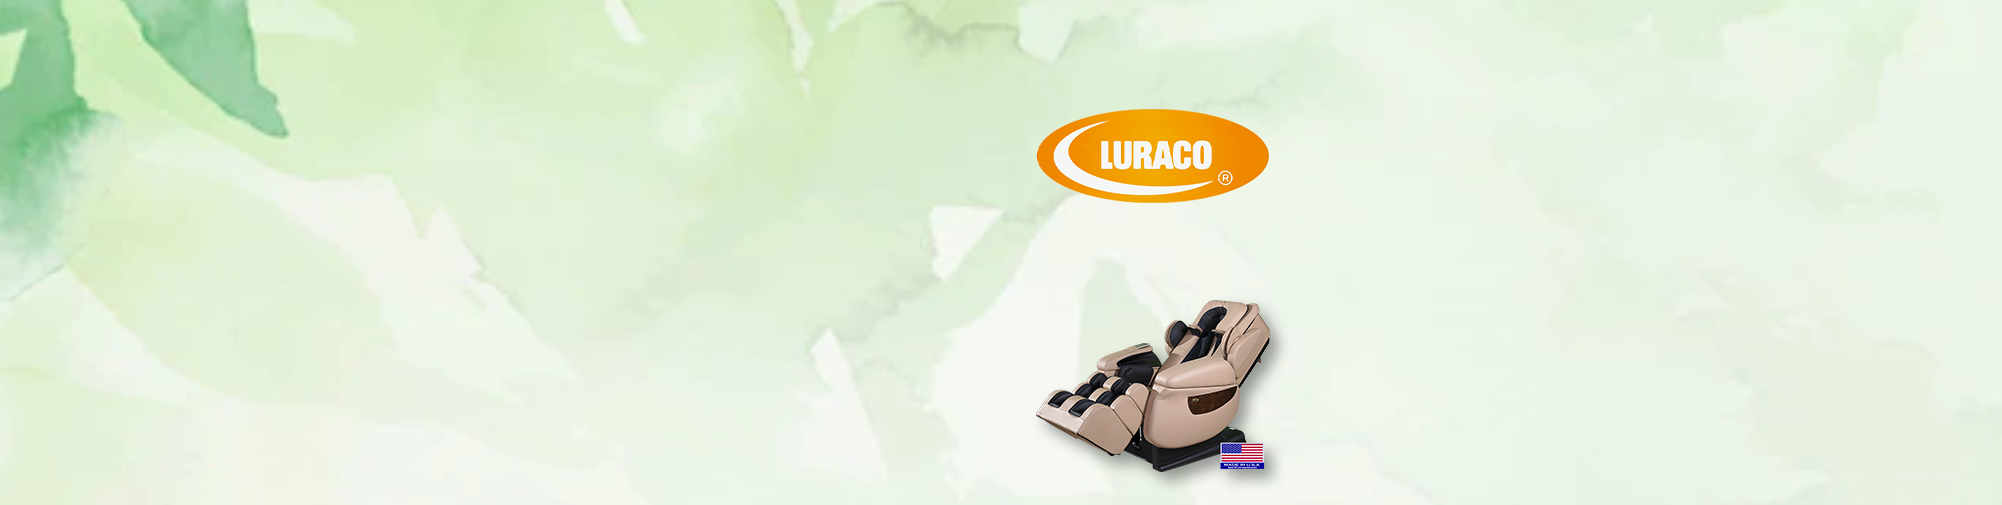 Luraco Technologies 건강 의자 | 마사지 의자 세계